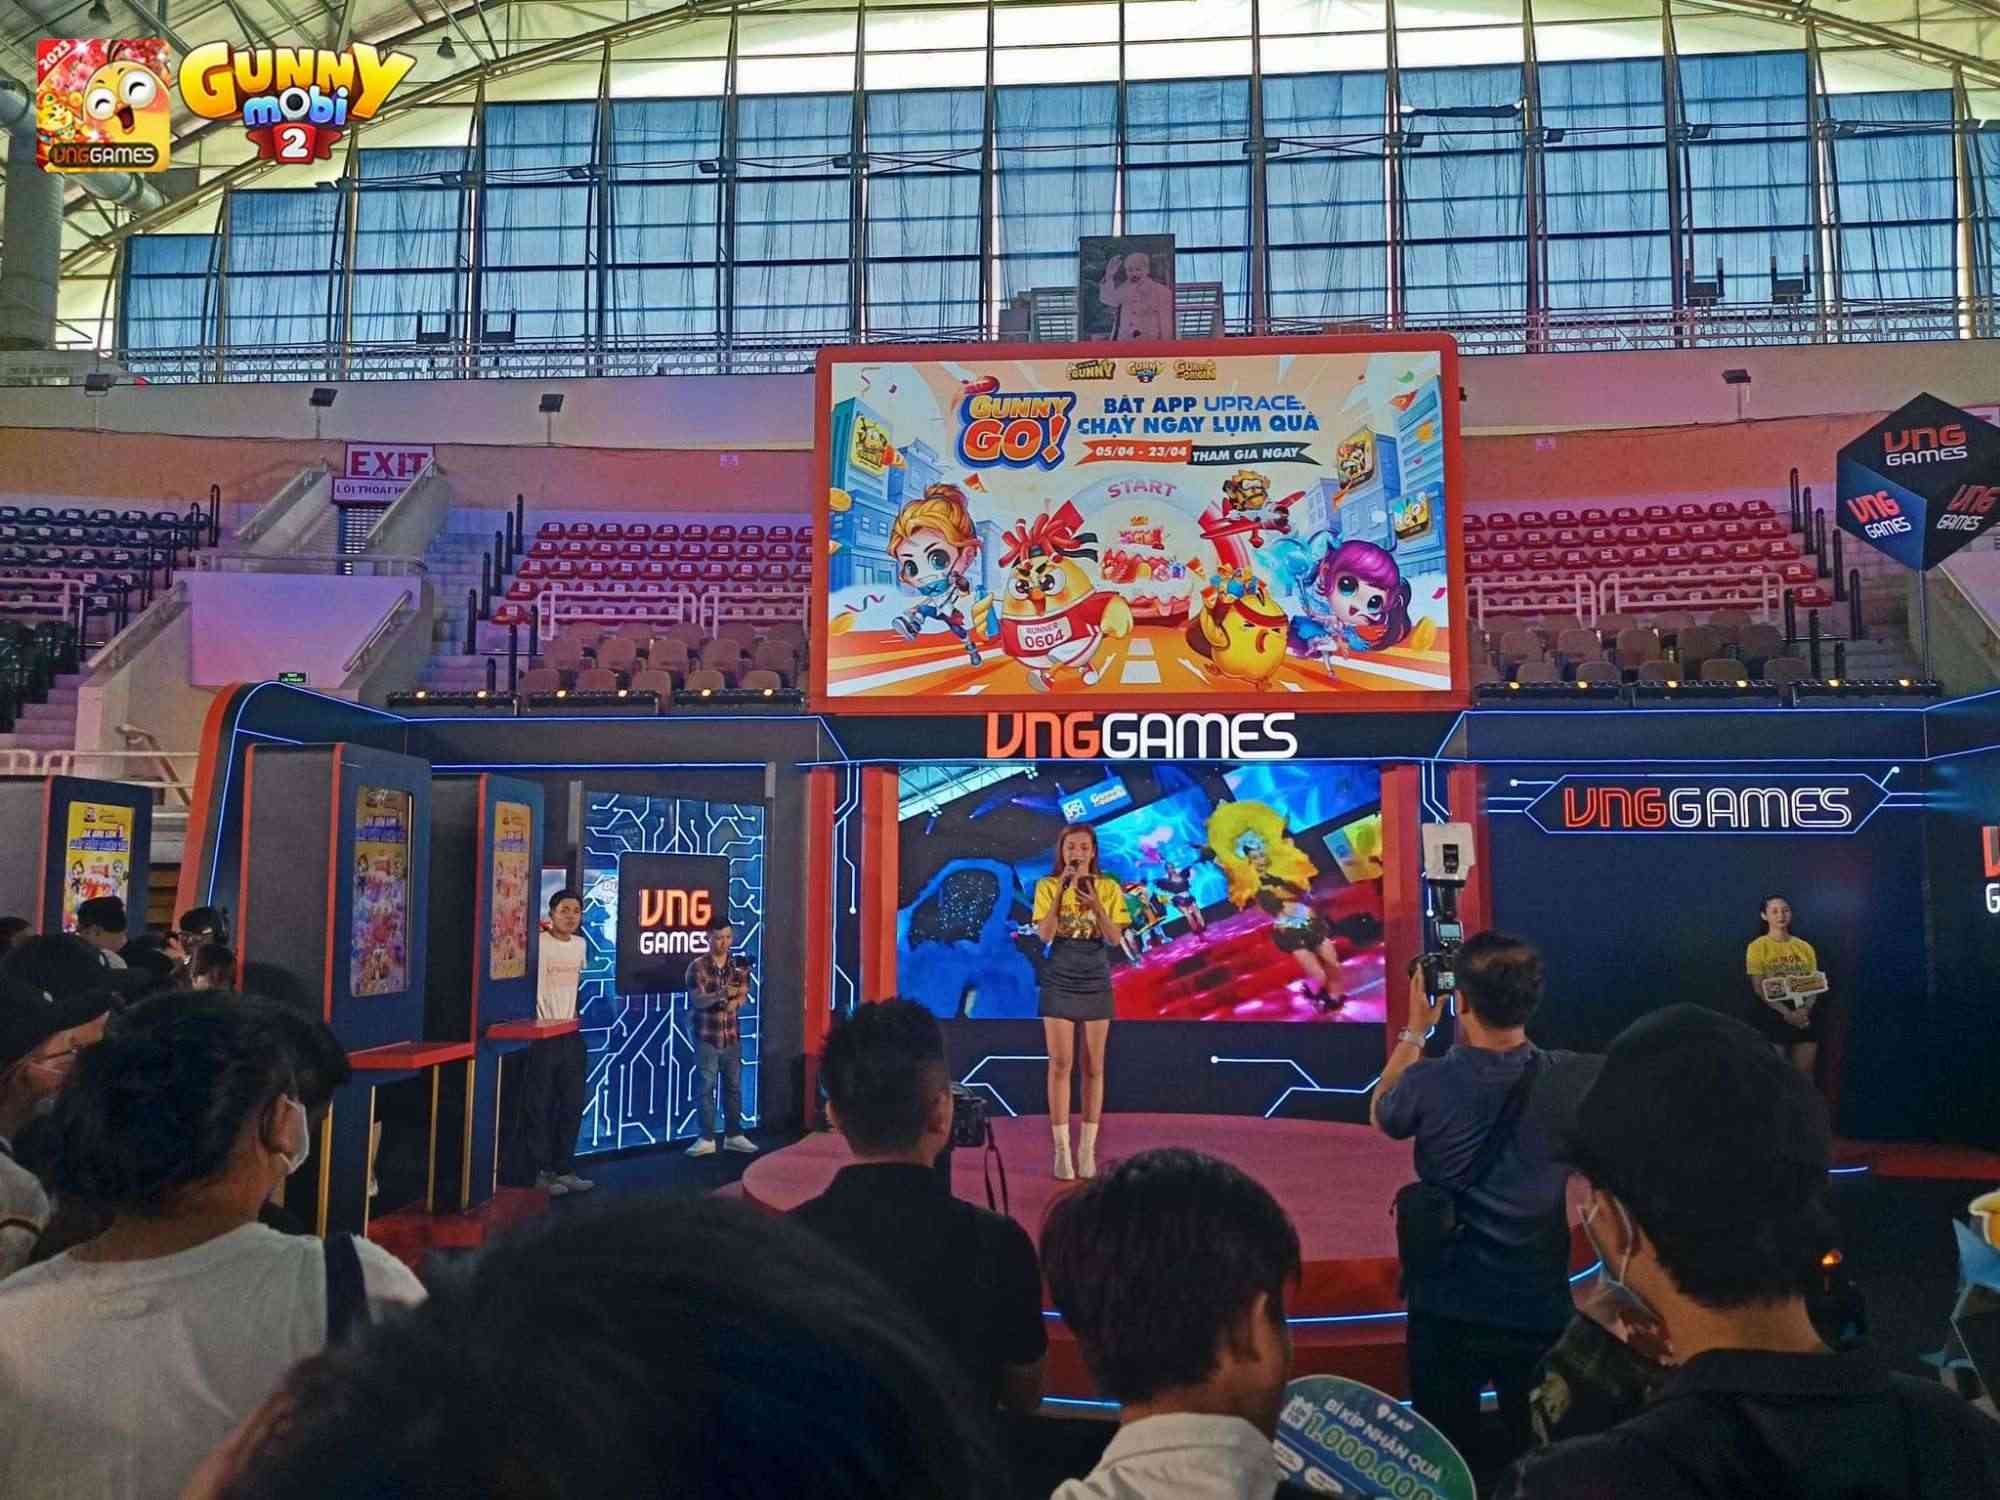 Vietnam Gameverse 2023: Ngắm dàn Cosplay và CSKH cực chất của các NPH tại sự kiện ngày đầu